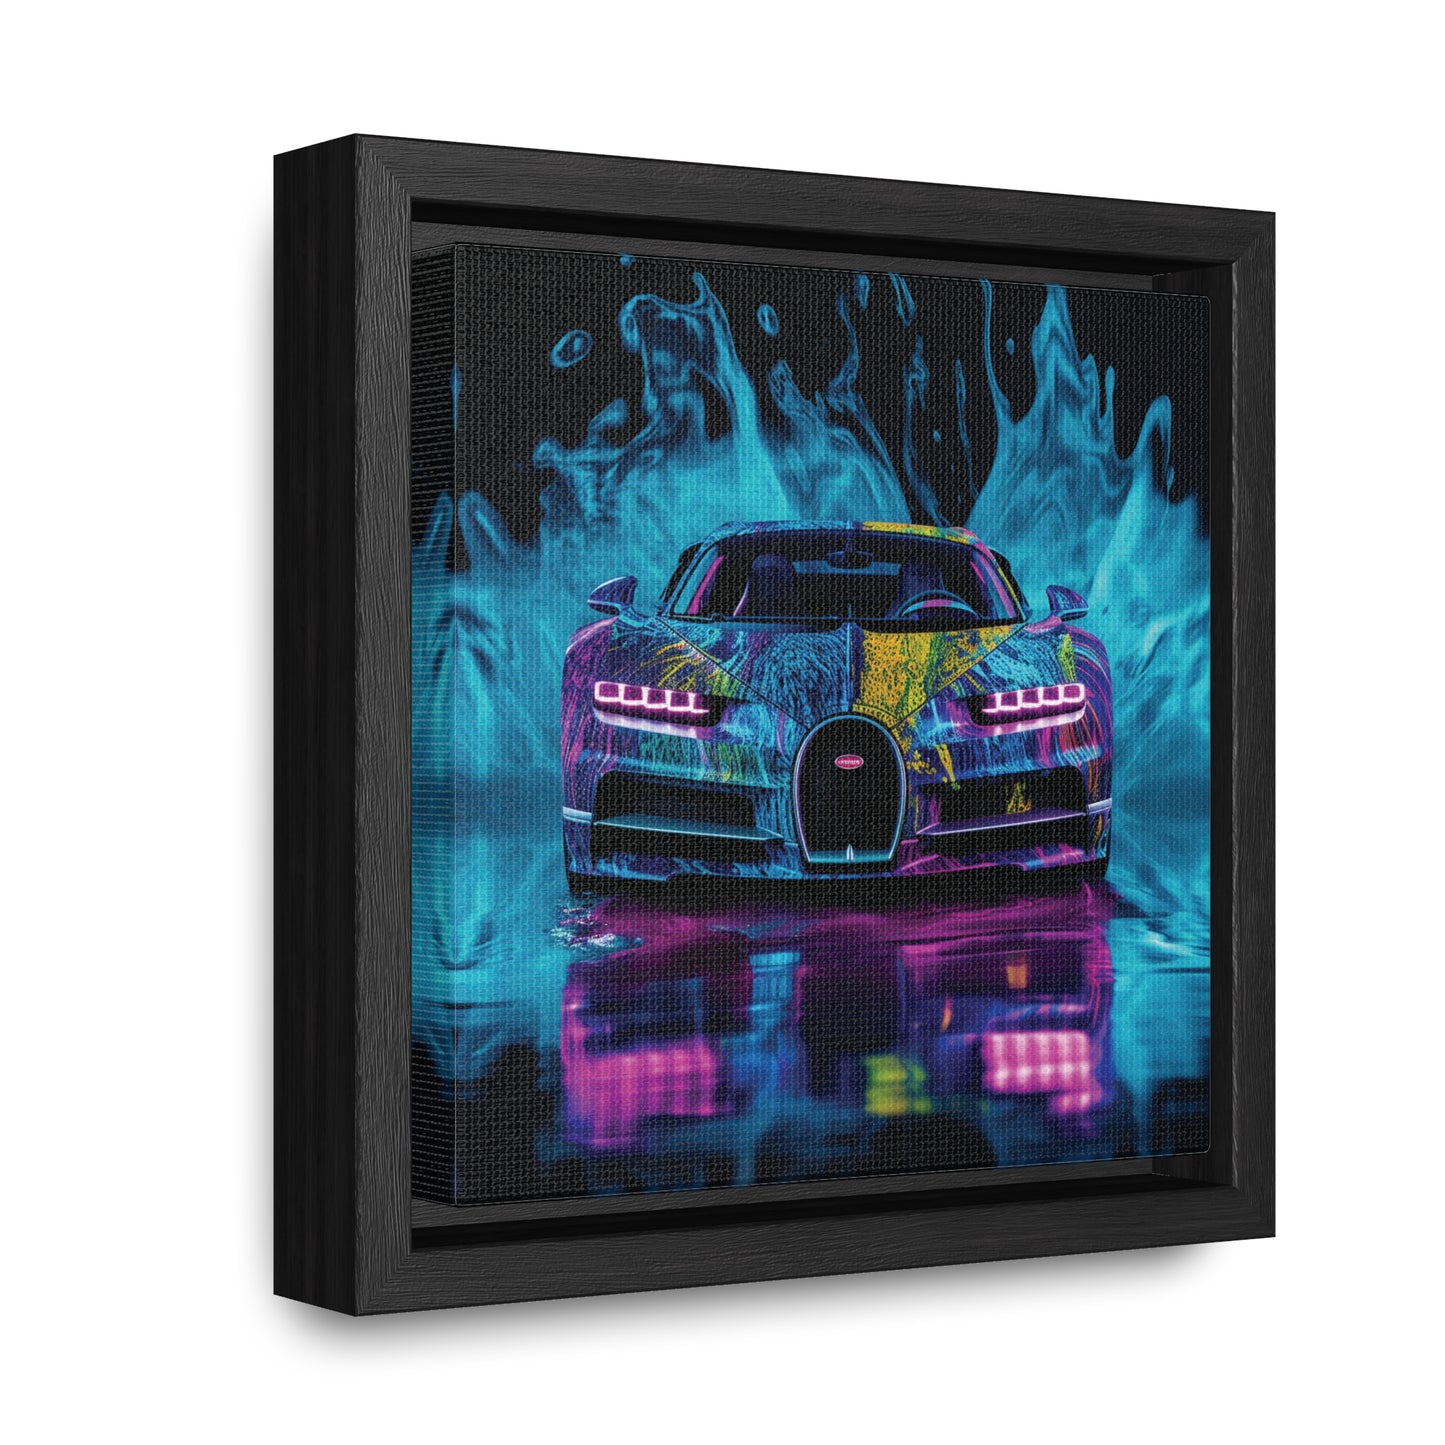 Gallery Canvas Wraps, Square Frame Bugatti Water 2